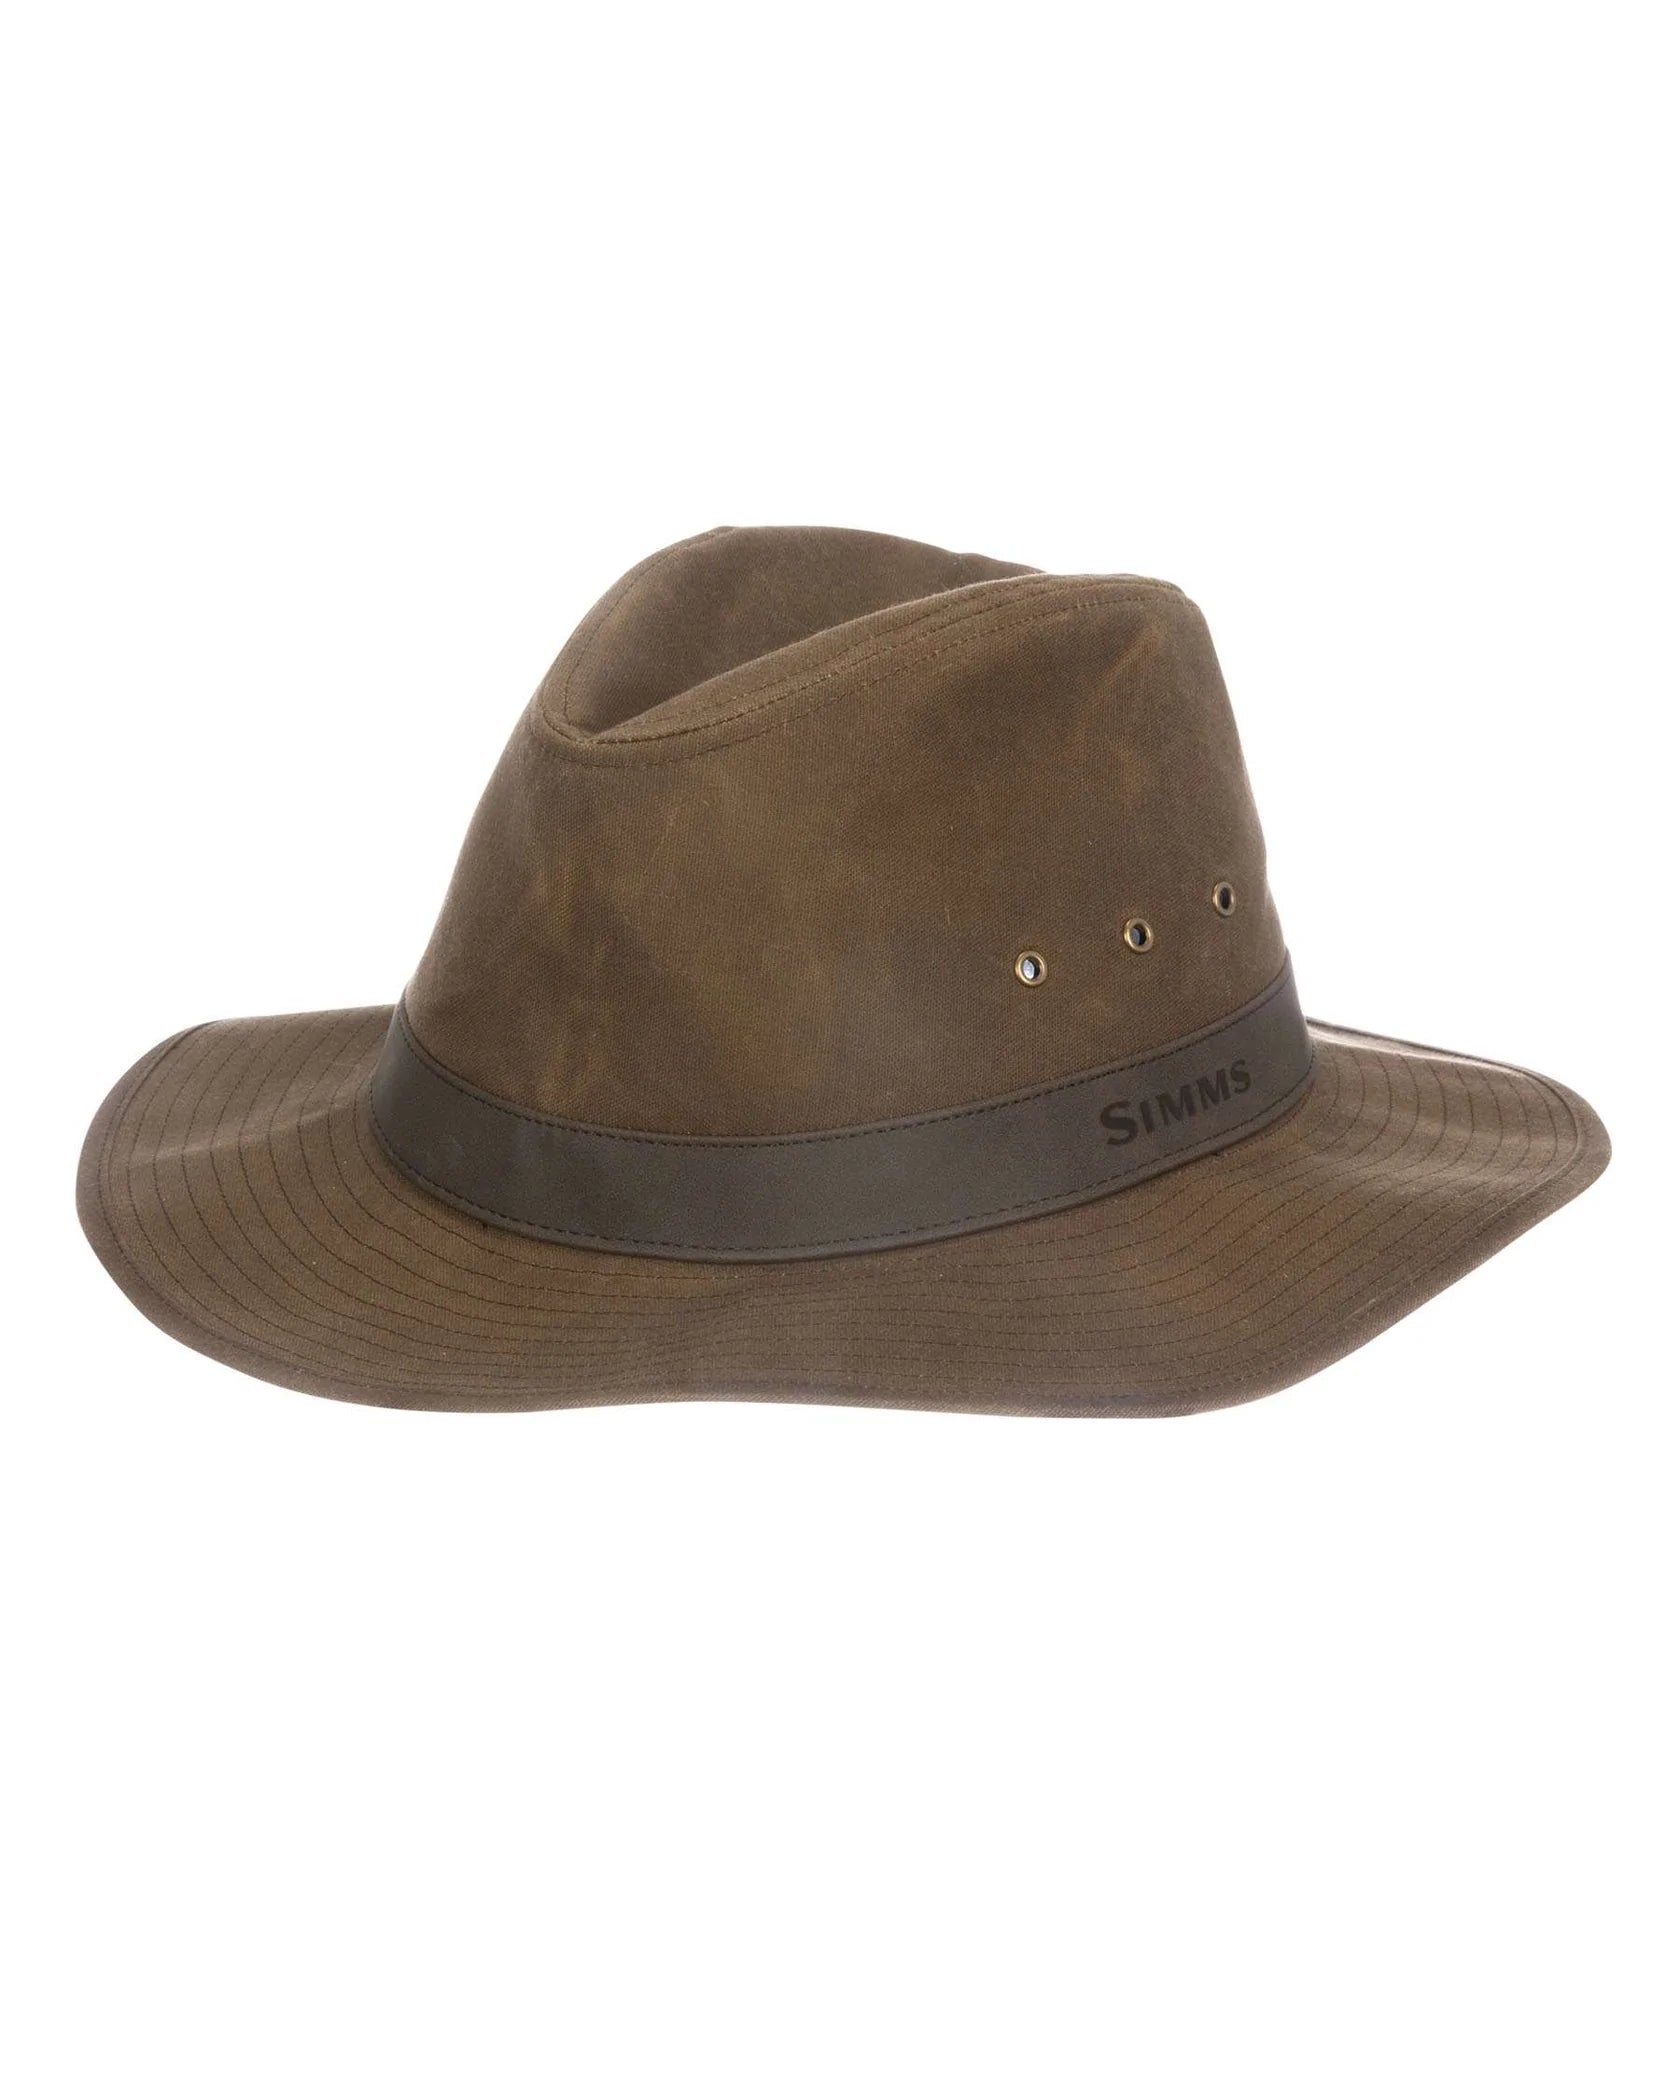 G. Loomis Bandit Trucker Hat – TW Outdoors